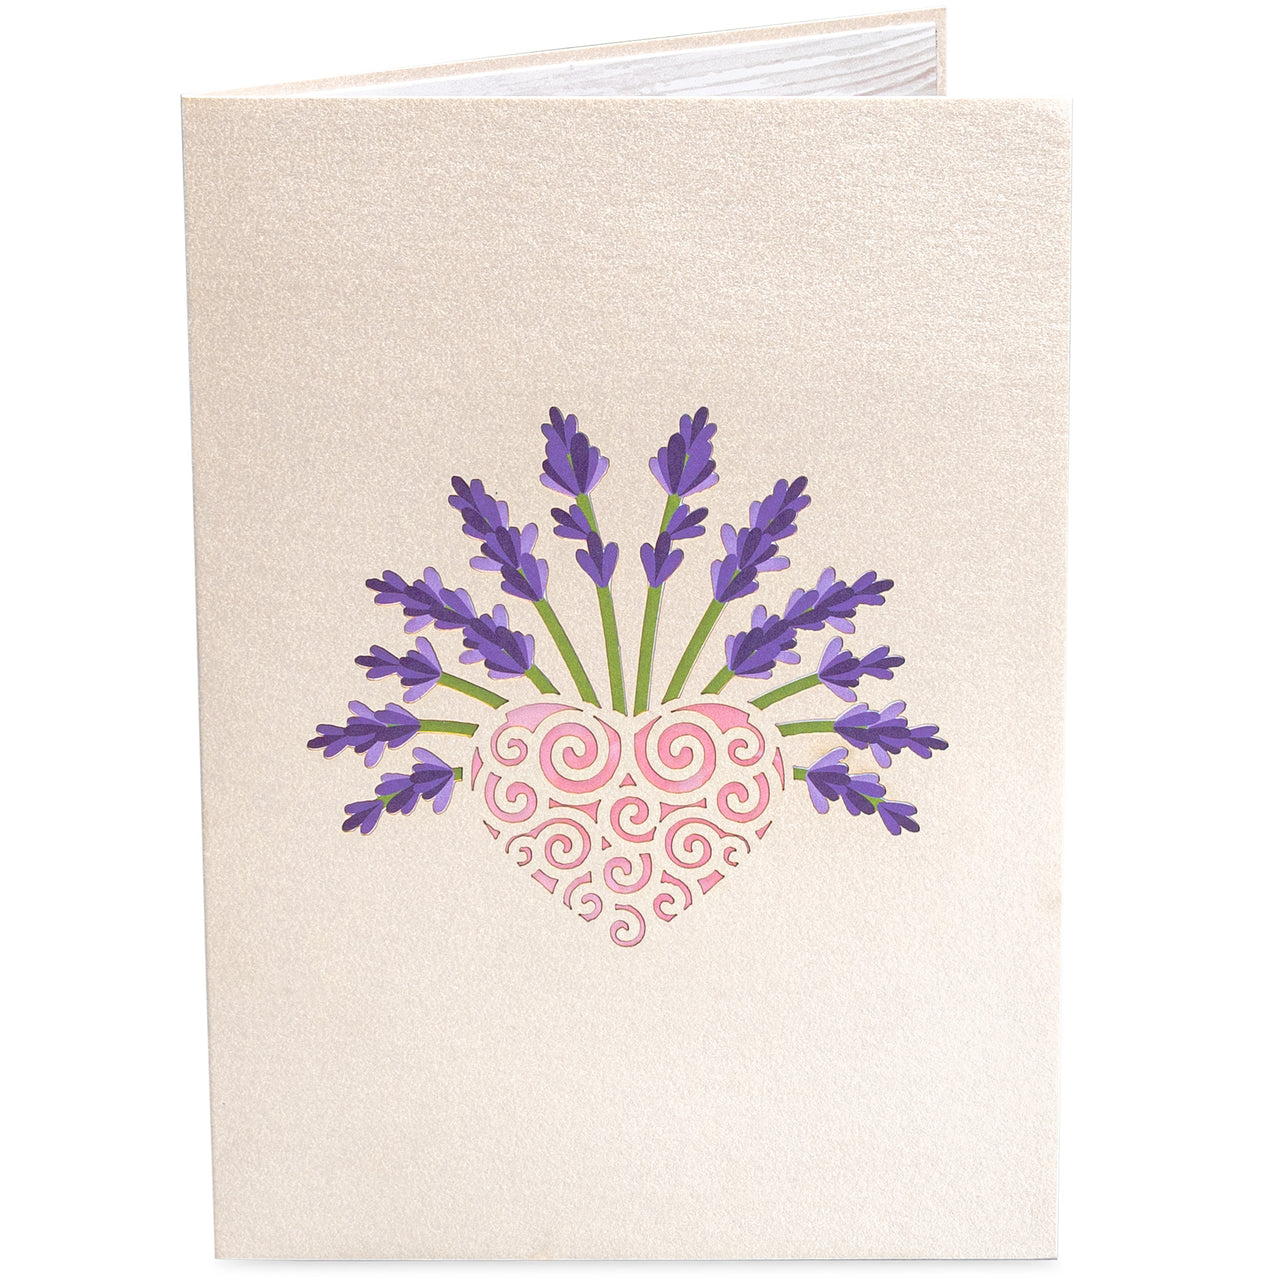 Lavender Pop Up Card